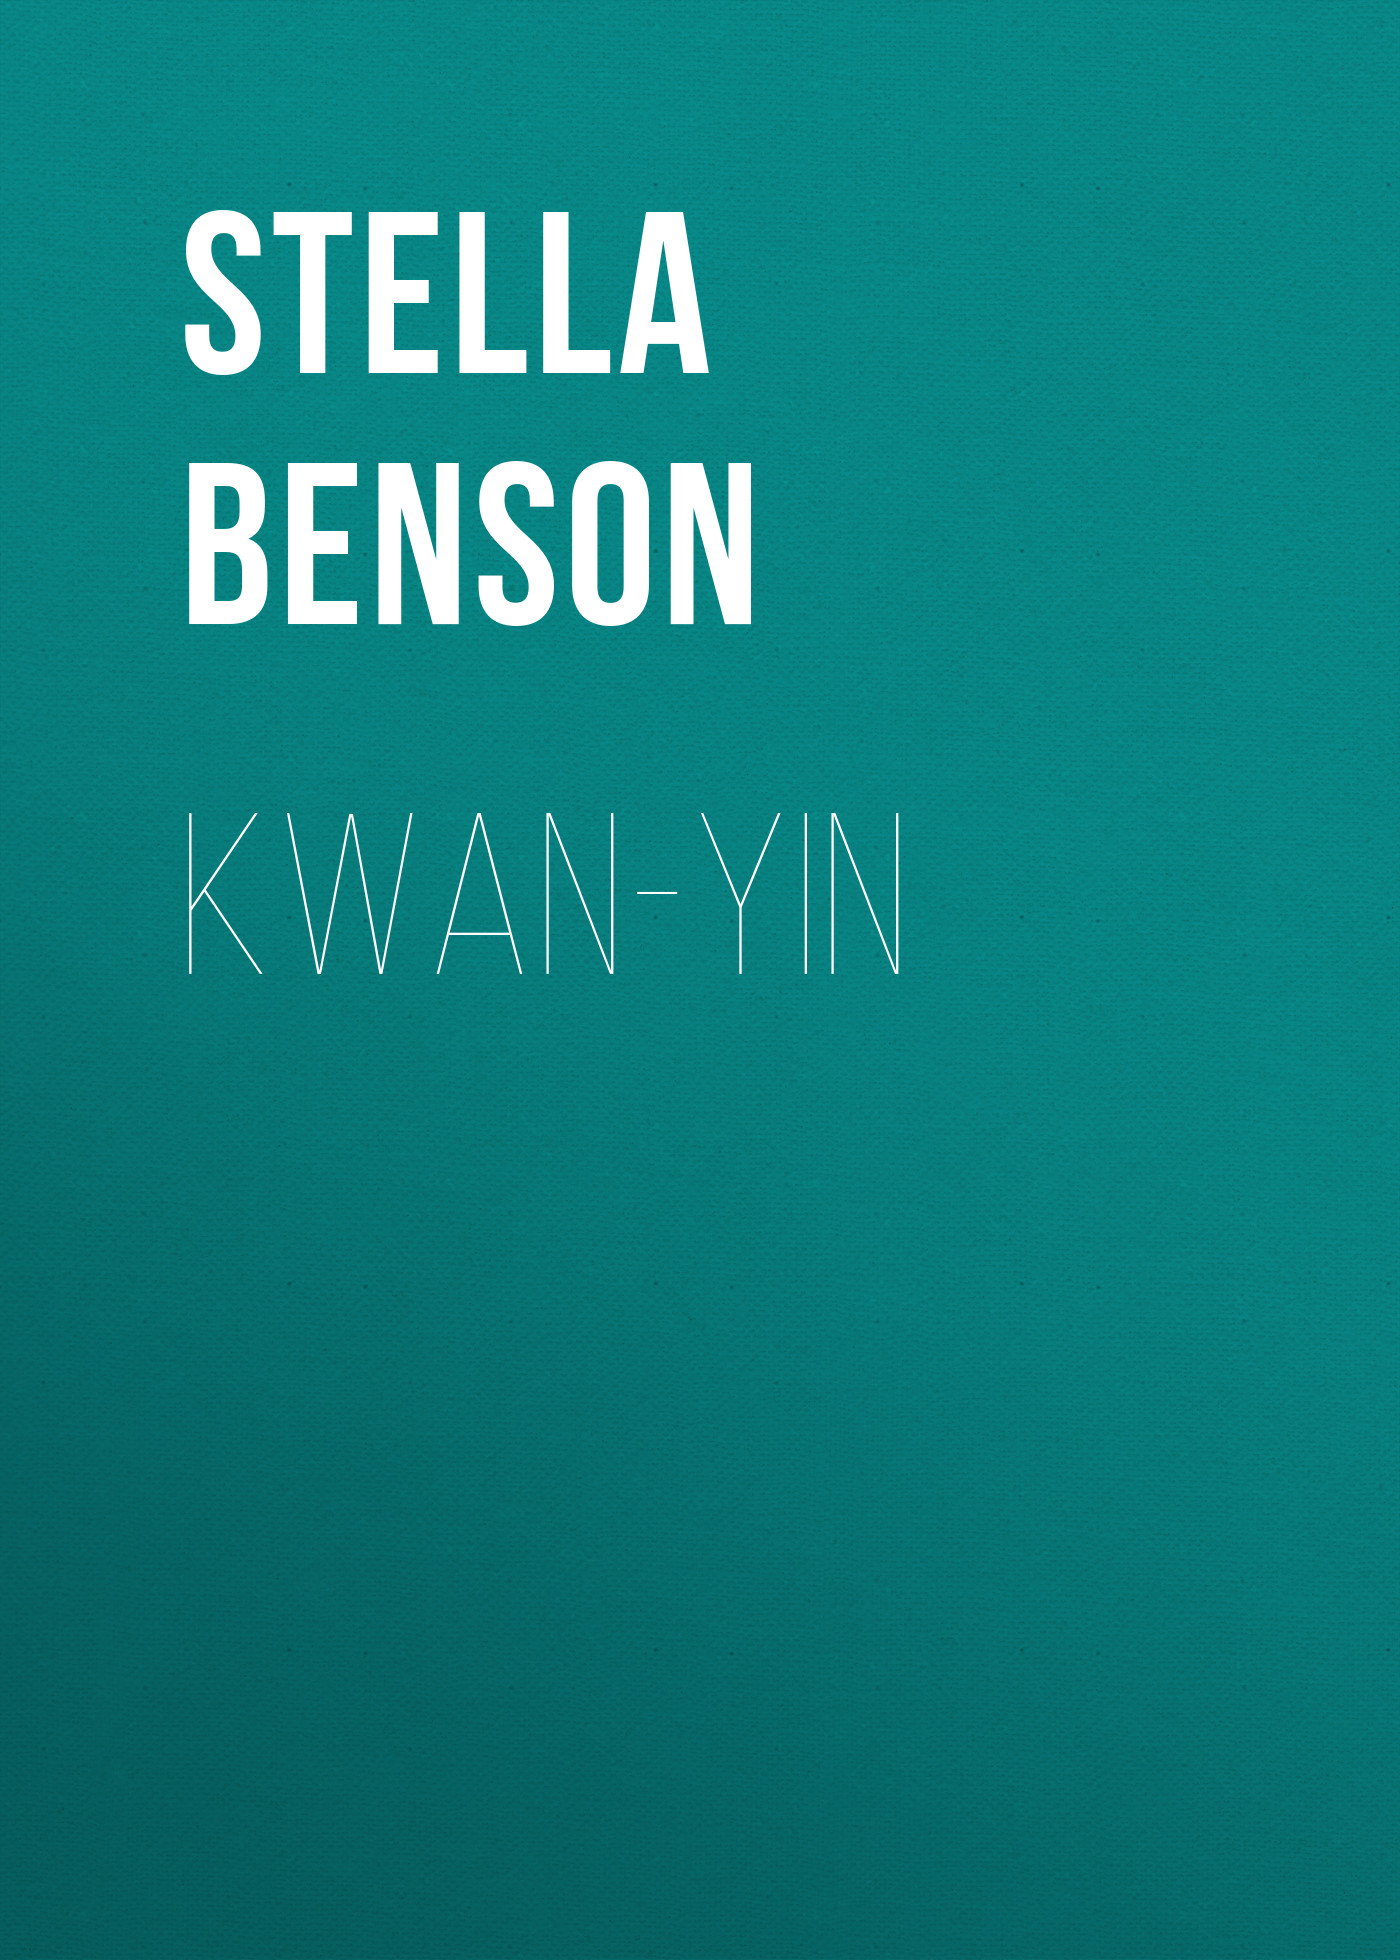 Книга Kwan-yin из серии , созданная Stella Benson, может относится к жанру Зарубежная старинная литература, Зарубежная классика, Зарубежная драматургия. Стоимость электронной книги Kwan-yin с идентификатором 24173668 составляет 0 руб.